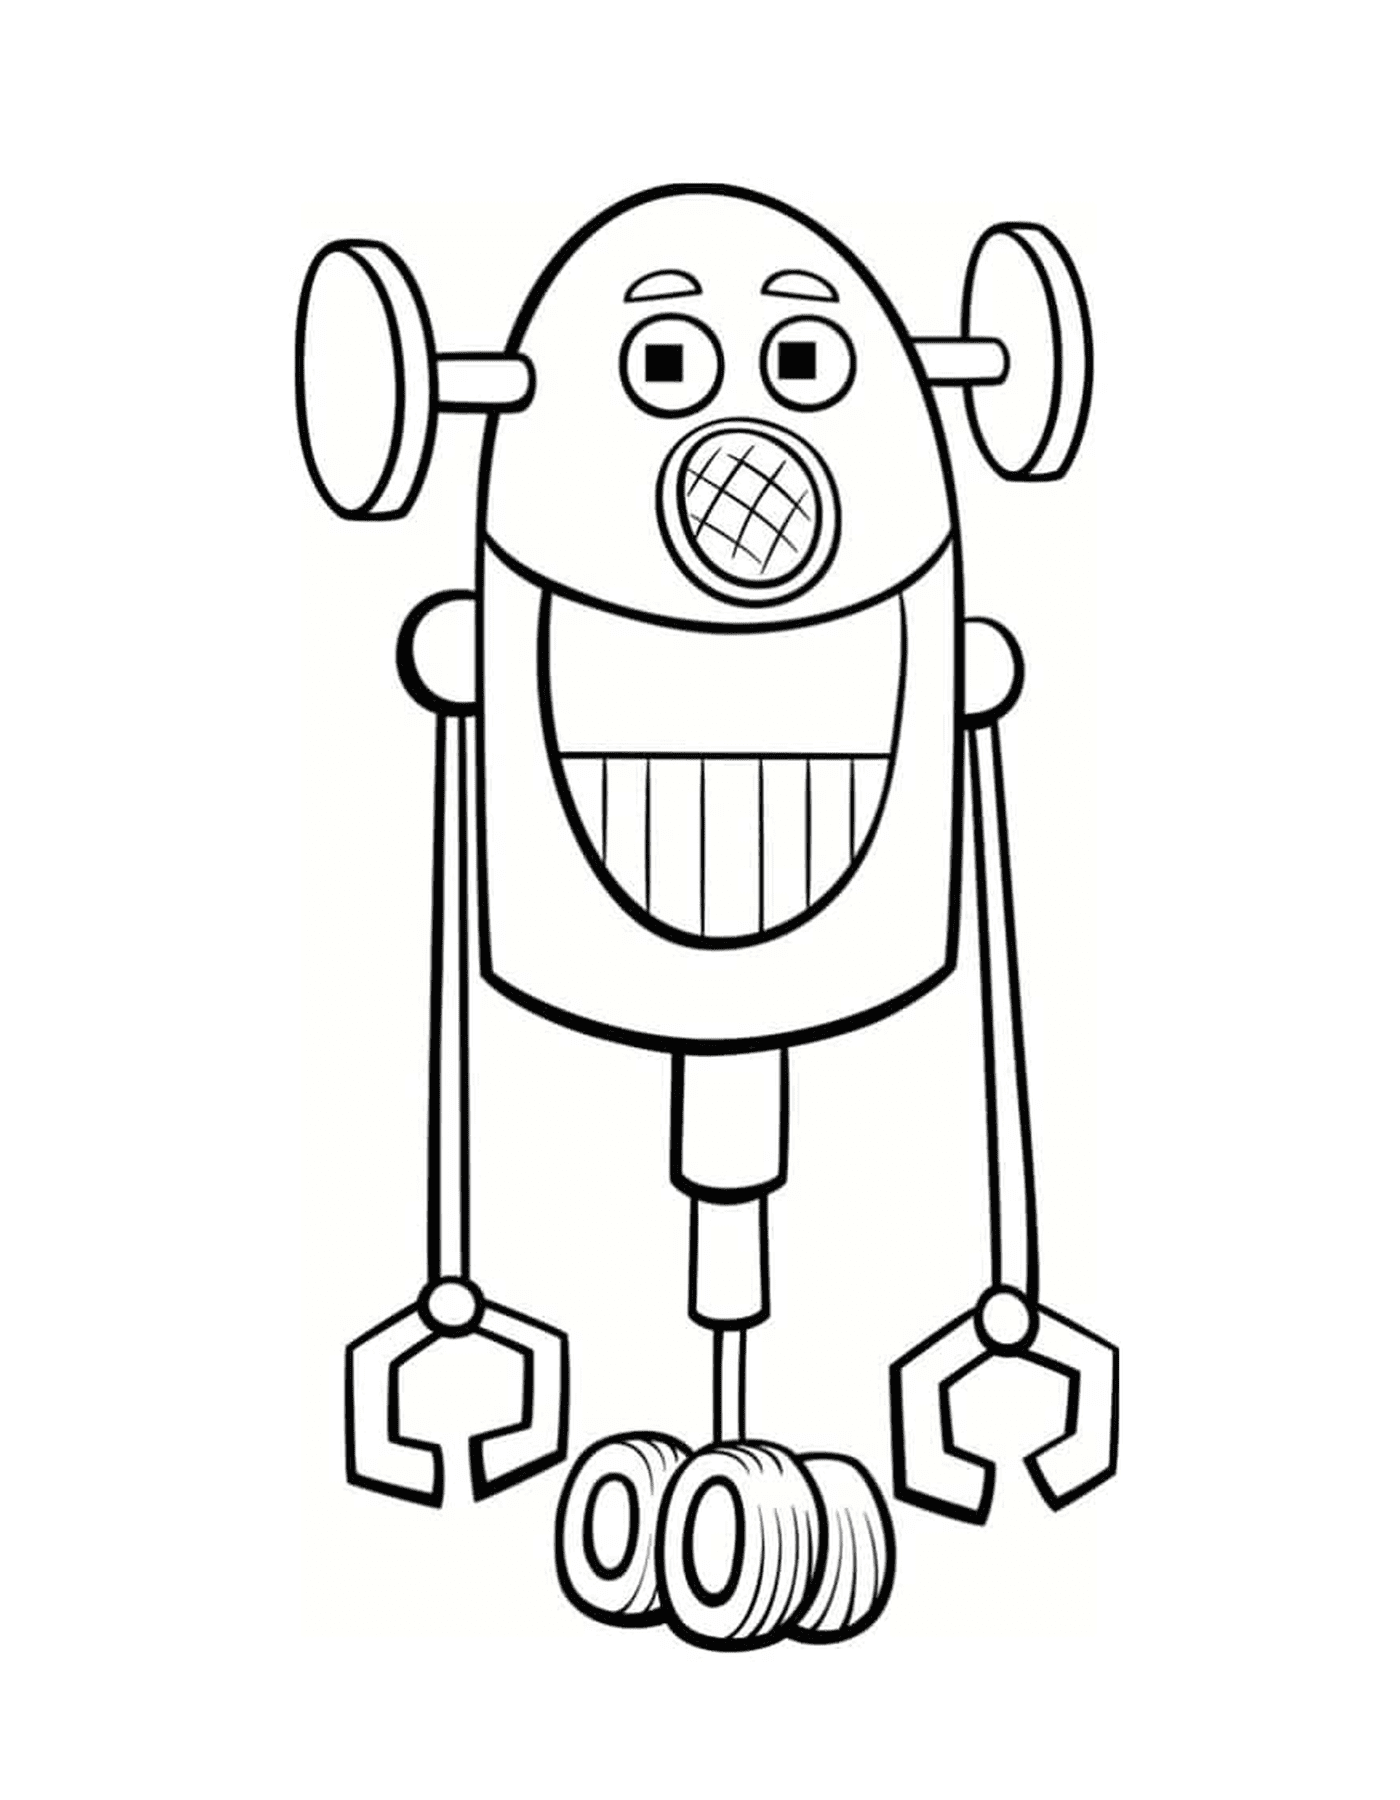  笑笑笑的机器人 